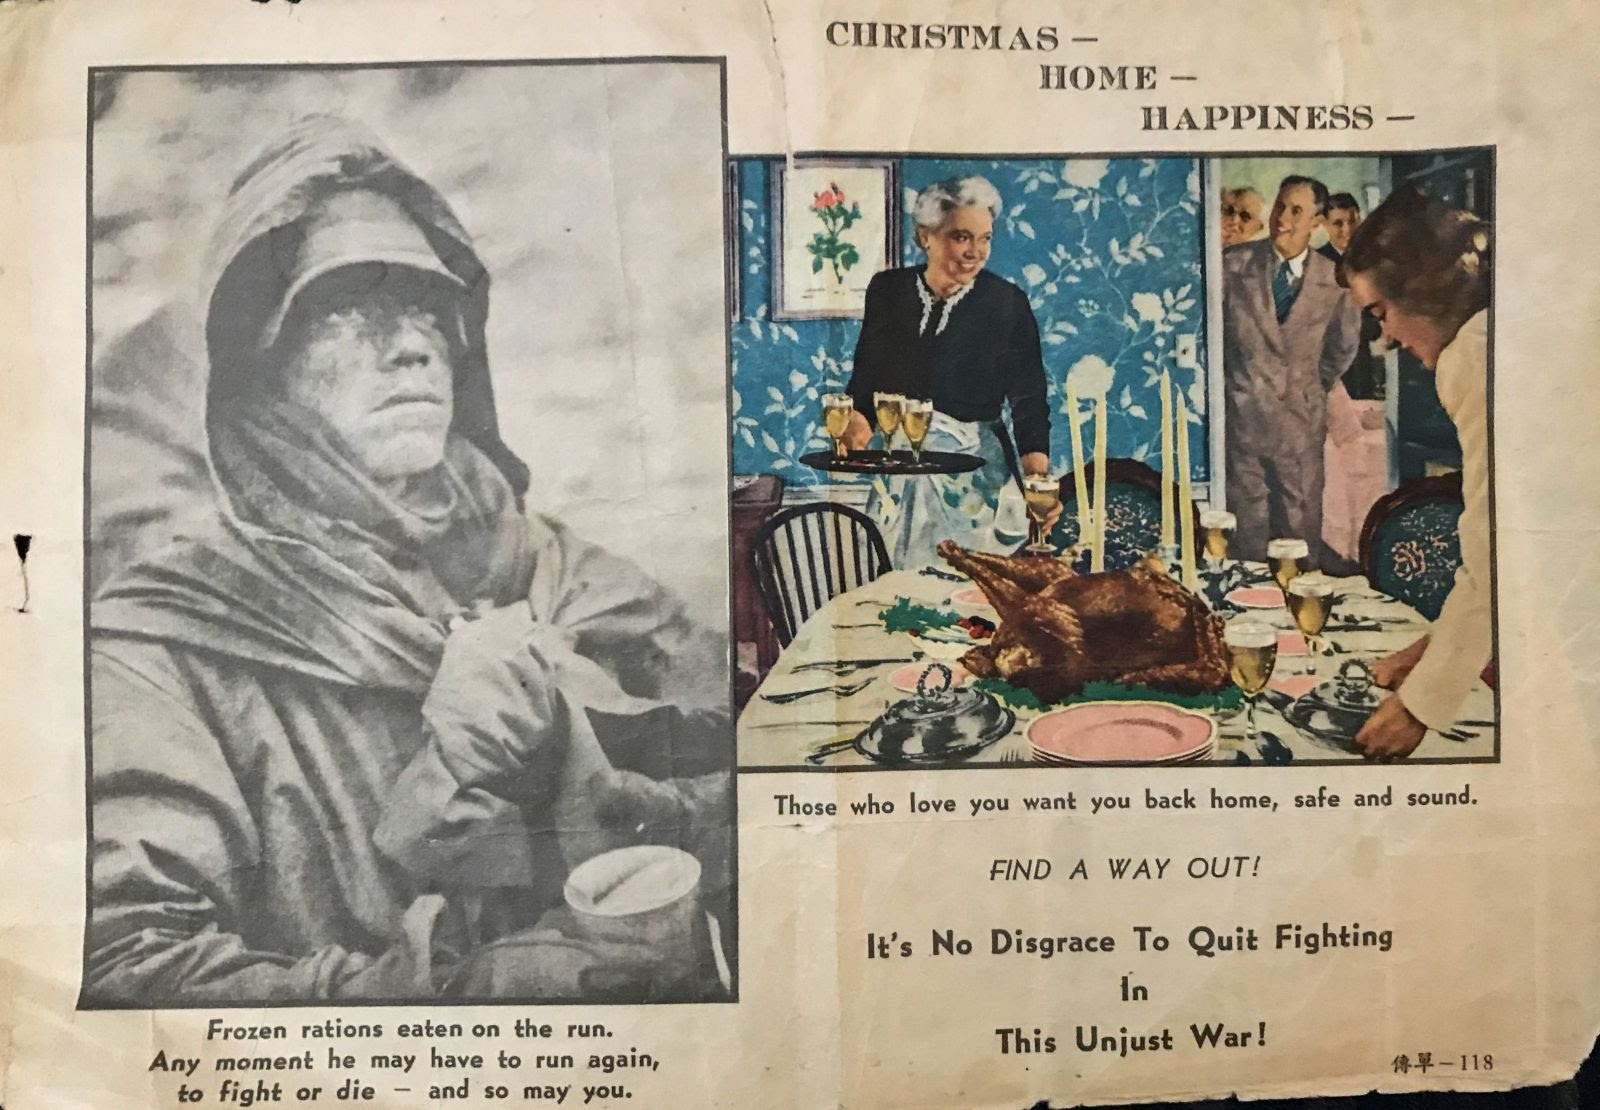 Propaganda for Christmas